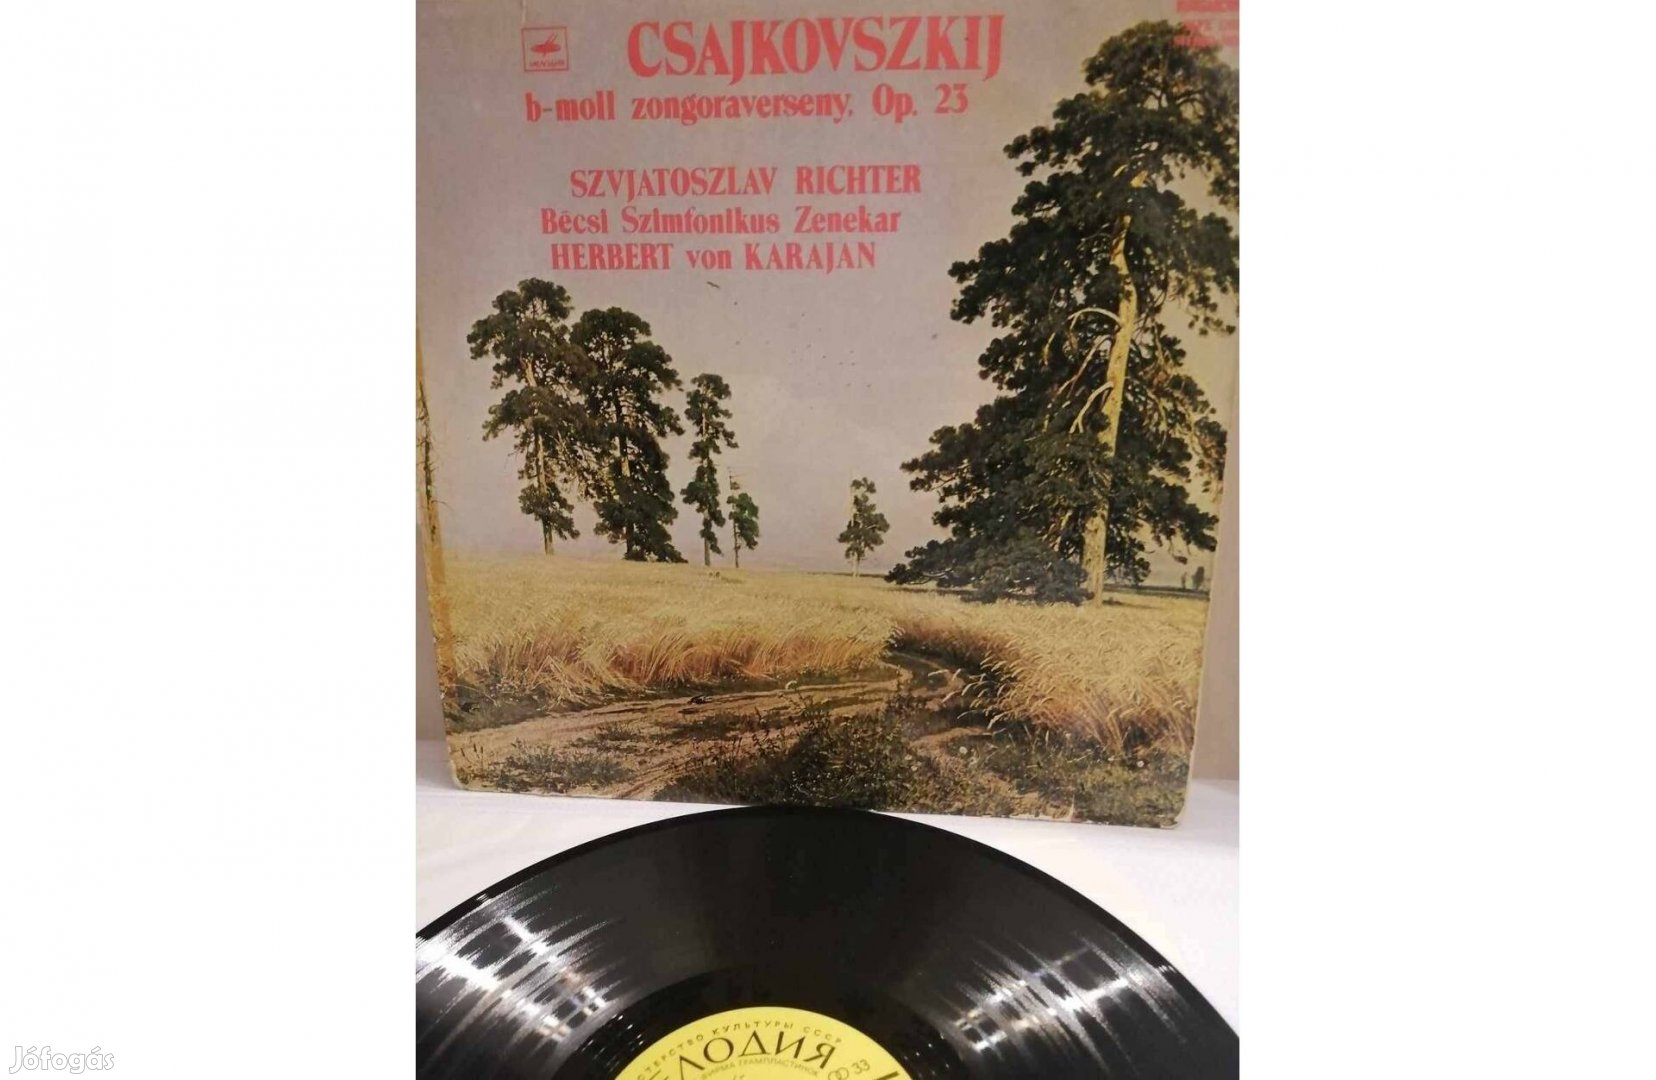 Csajkovszkíj b-mol zongoraverseny bakelit lemez eladó!